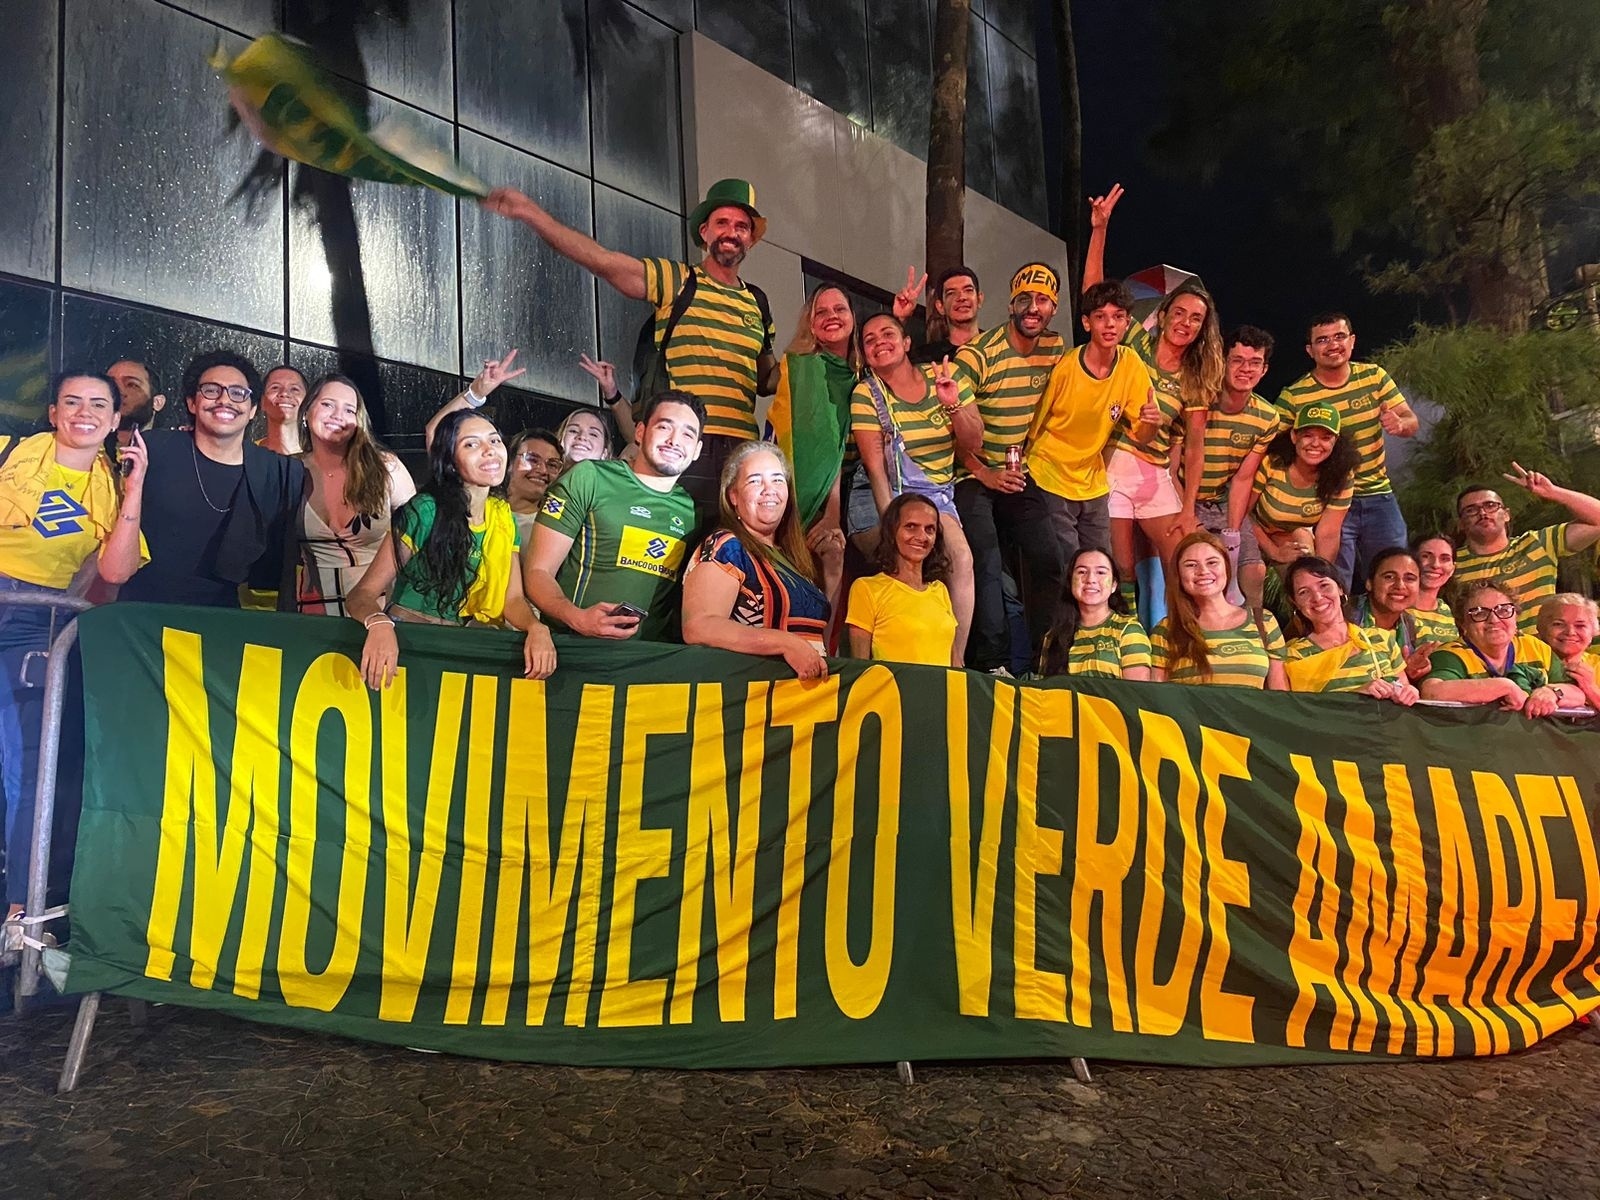 Brasil estreia no Pré-Olímpico feminino de vôlei: veja onde assistir aos  jogos - Gazeta Esportiva